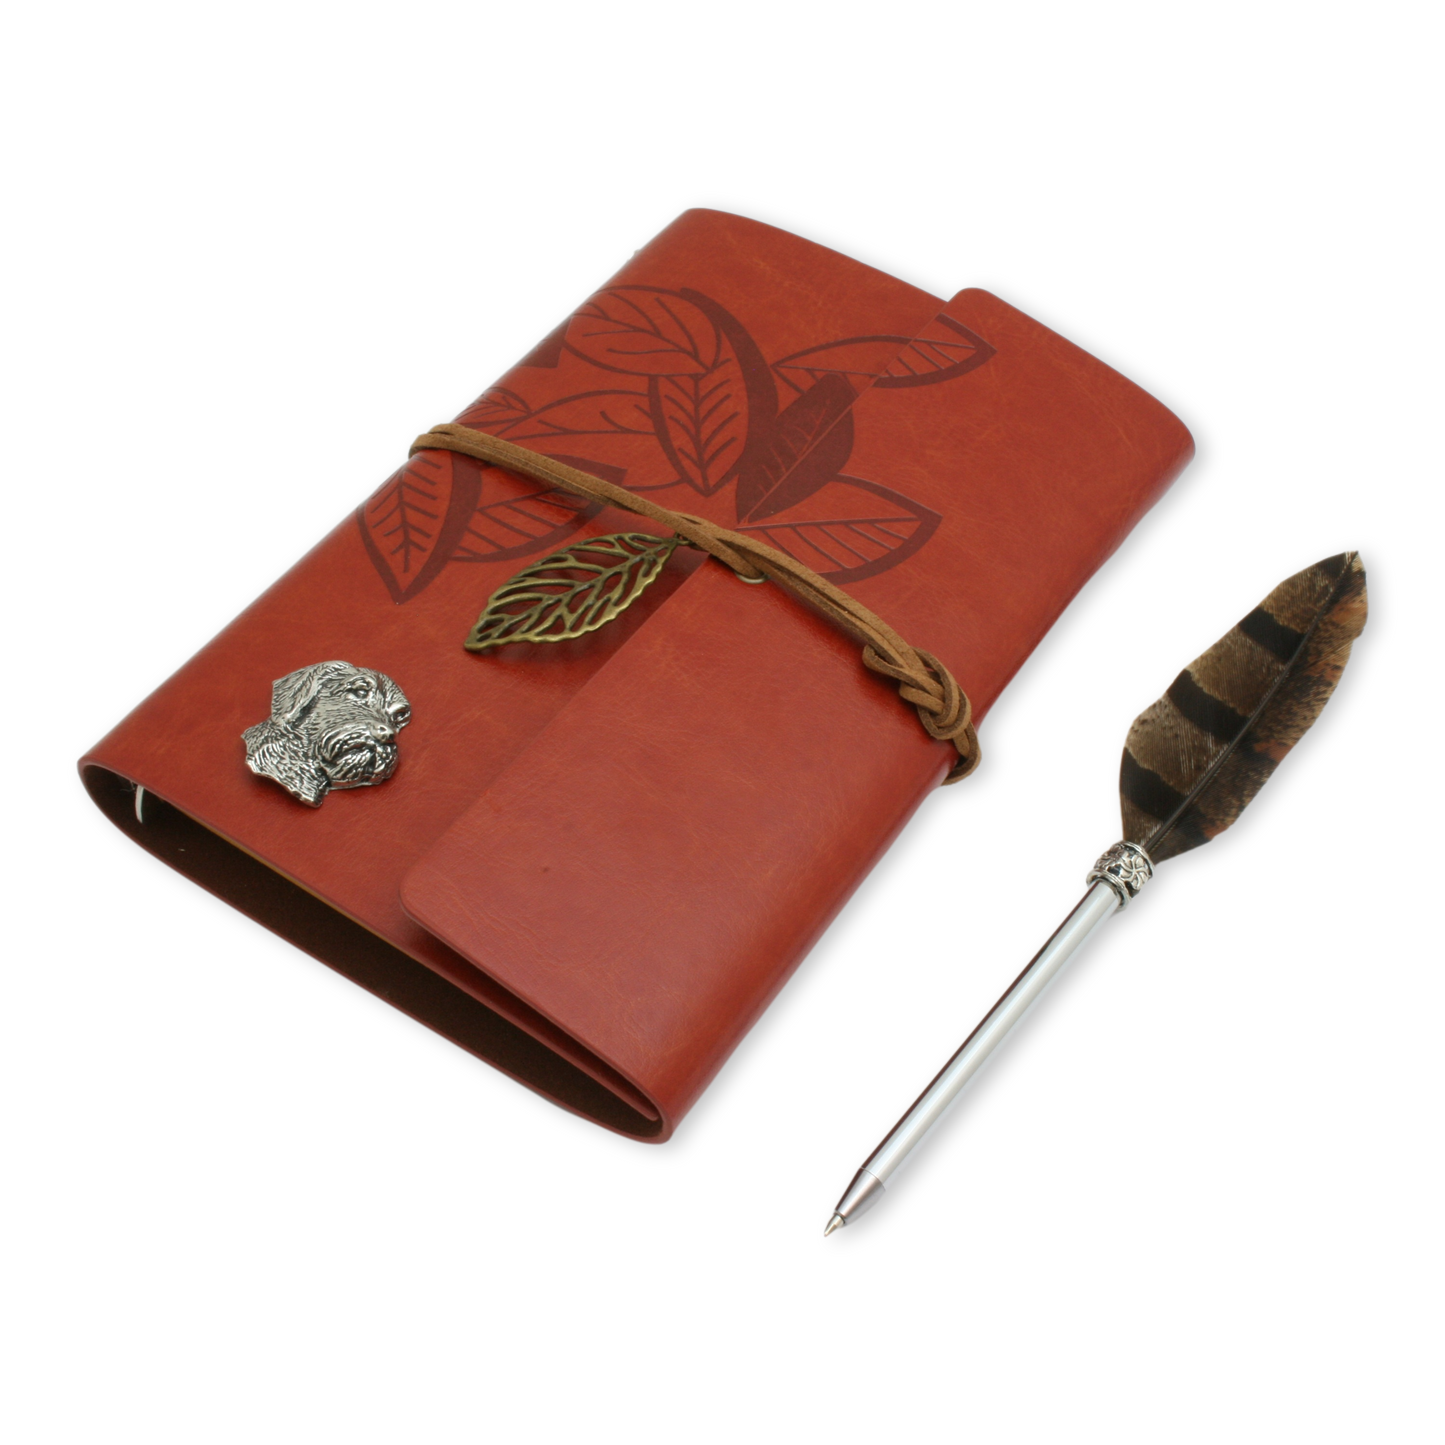 Gundogs Notebook & Quill Pen Set Gift Boxed